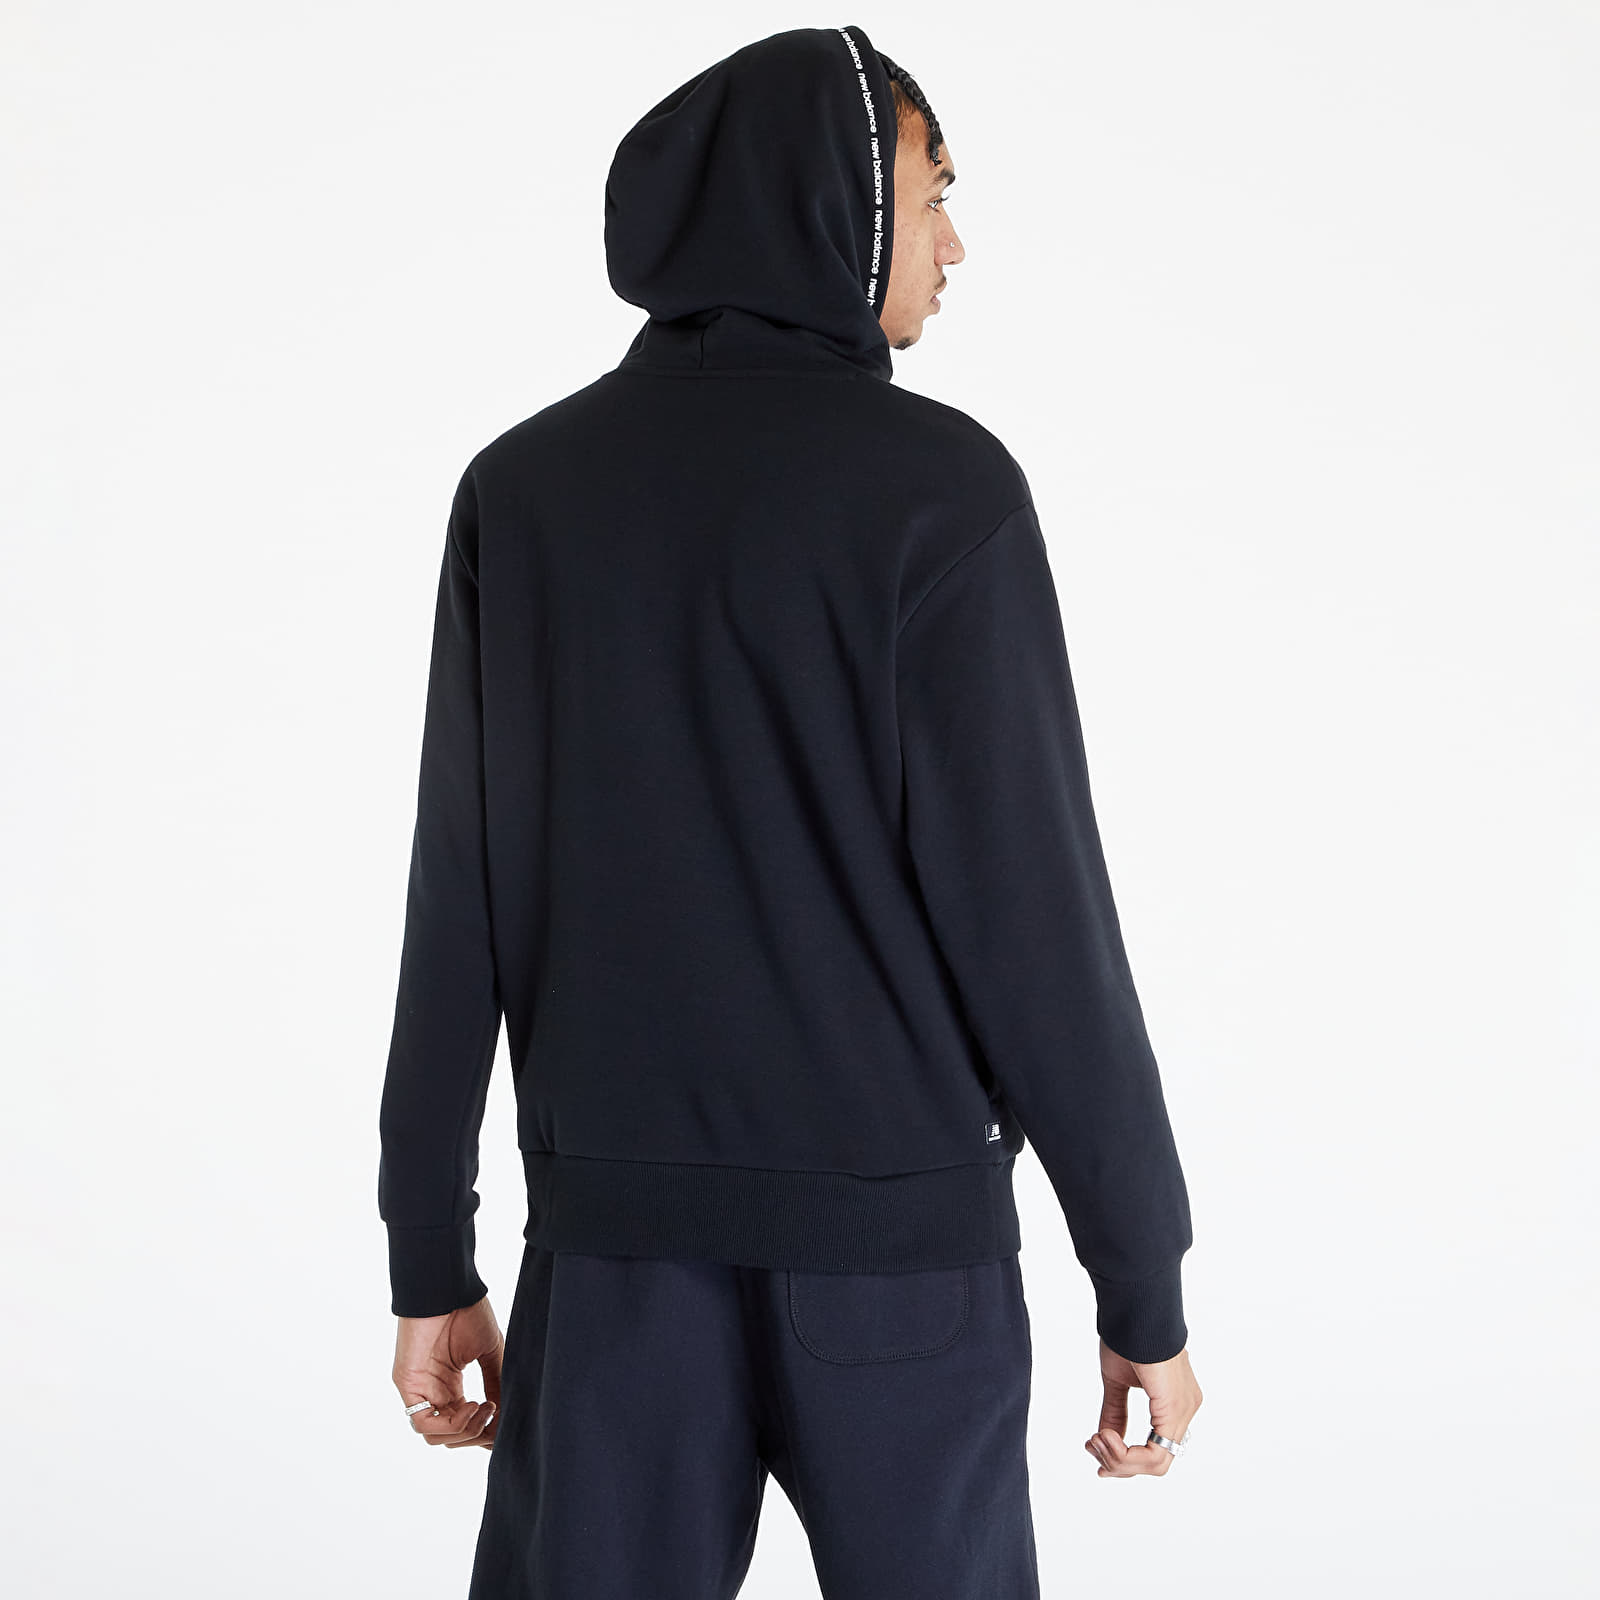 Balance | Hoodies sweatshirts Black Hoodie and Essentials Queens Fleece New